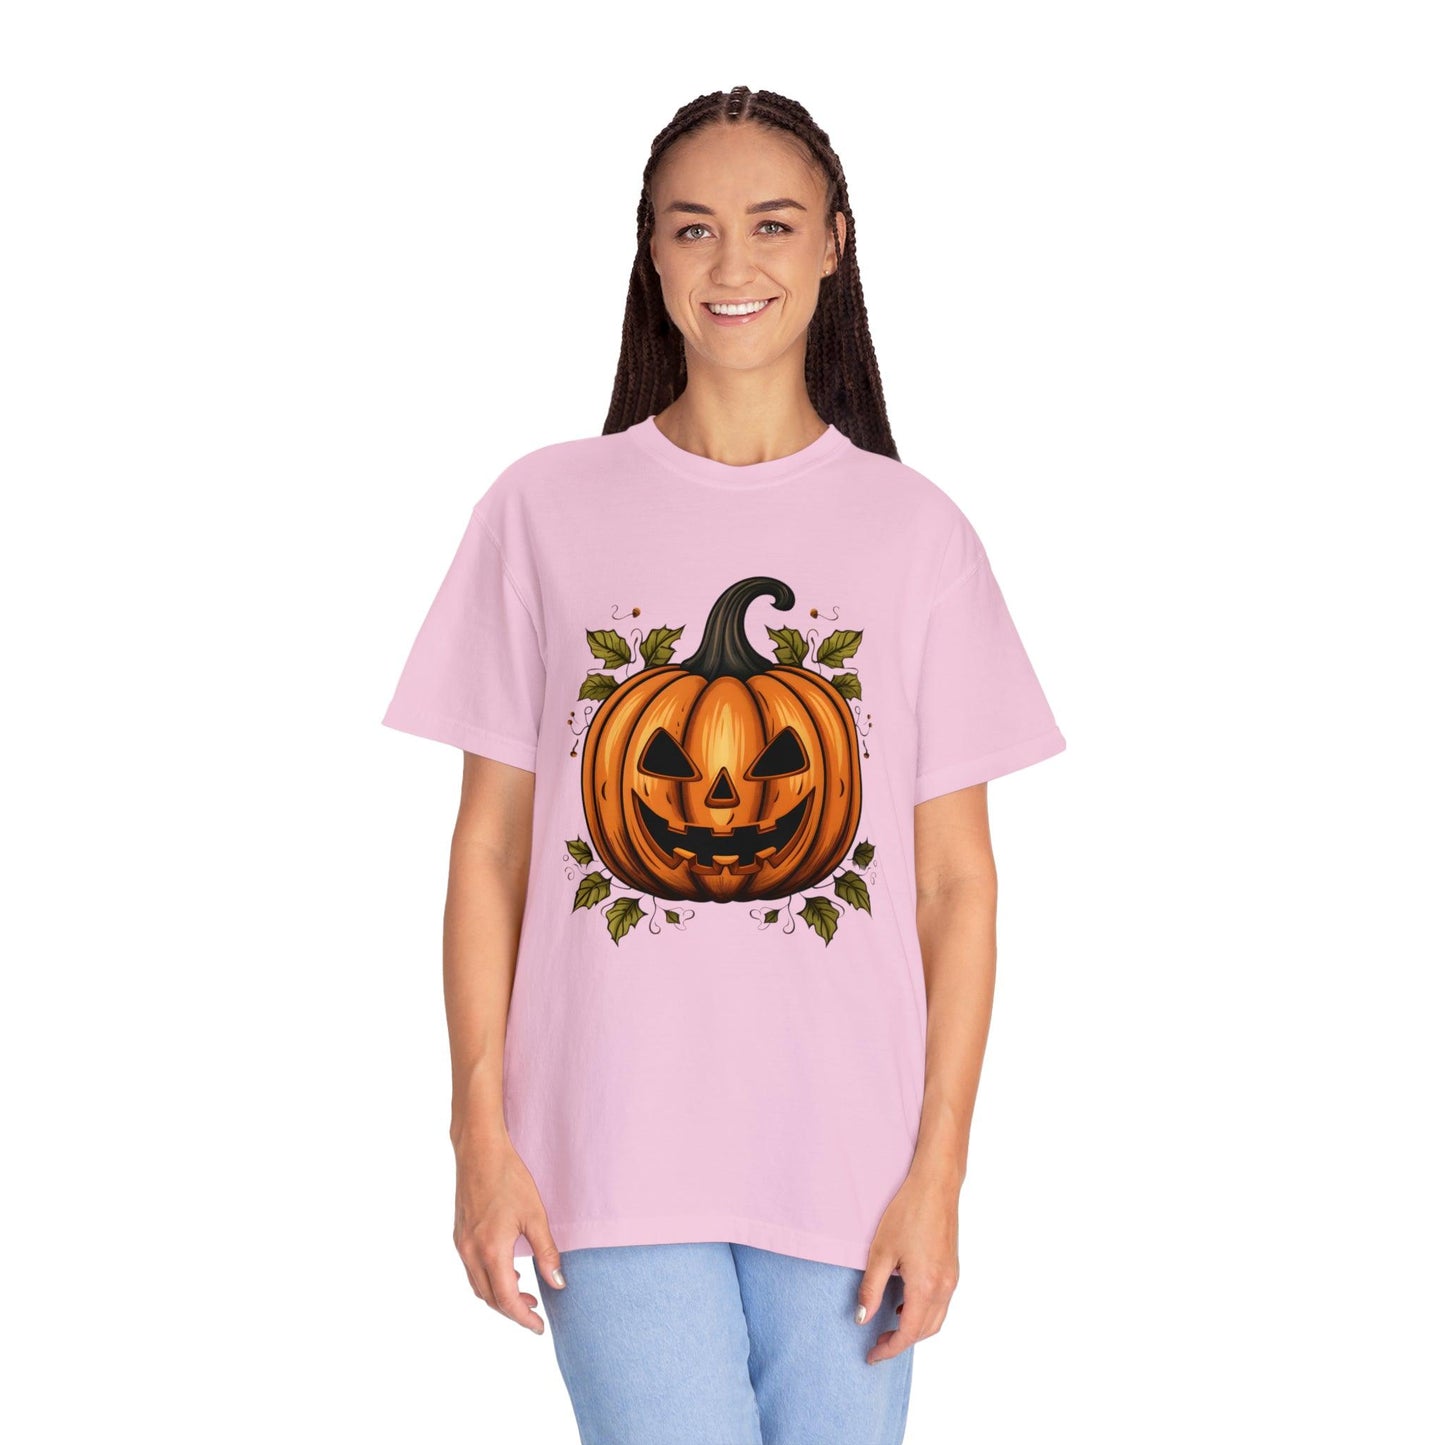 Scary Pumpkin Shirt, Halloween Shirt, Halloween Costume Pumpkin Costume Laughing Pumpkin Tee Fall tshirt Fall Shirt Halloween Gift